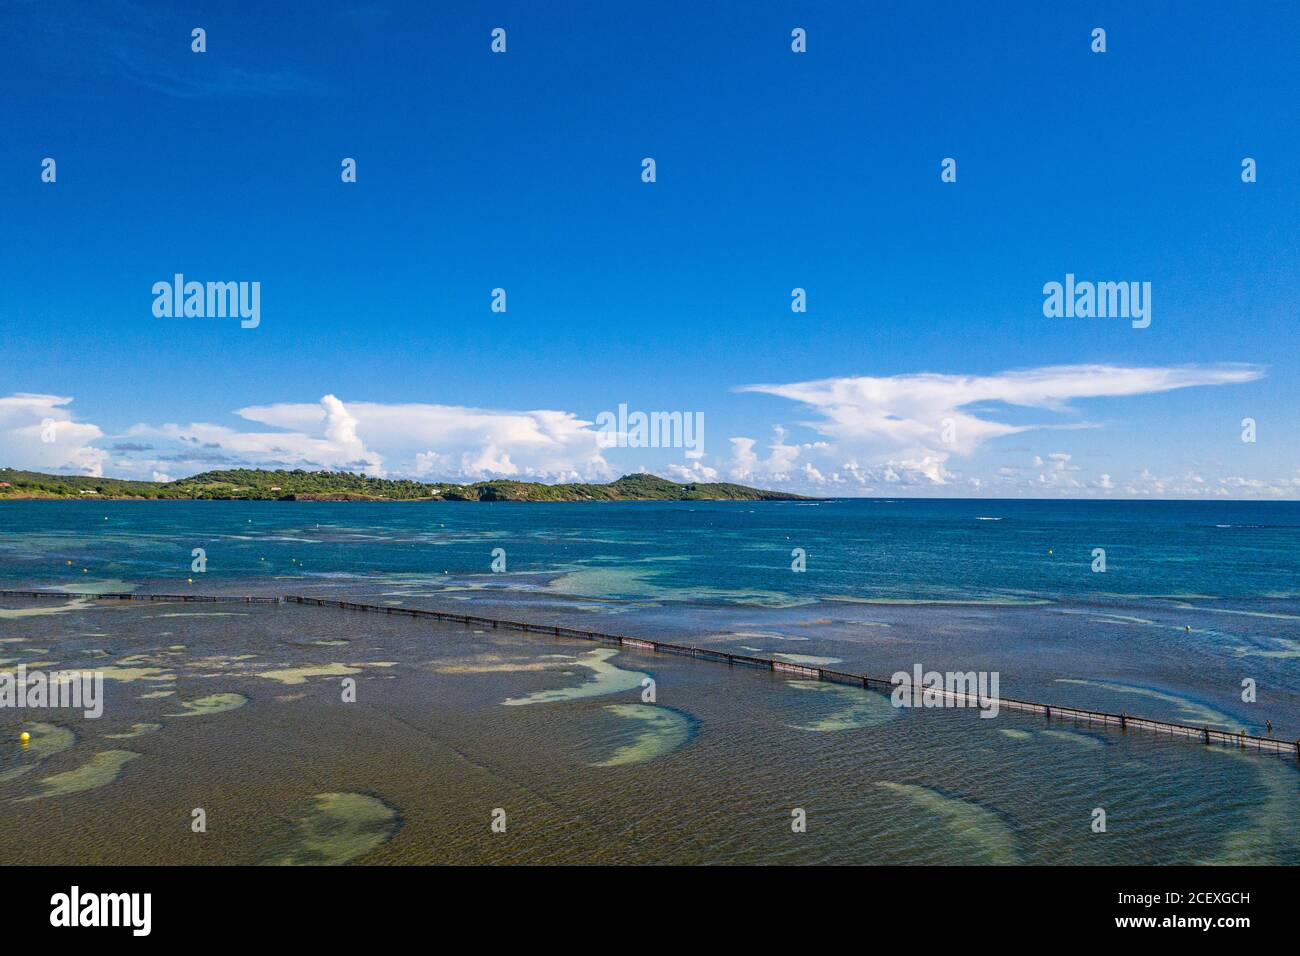 Karibische Strände sind wegen der Sargassum-Algen im Niedergang. Zäune werden im Meerinstalliert Dies ist der Fall hier in der Stadt Vauclin auf Martinique. Stockfoto